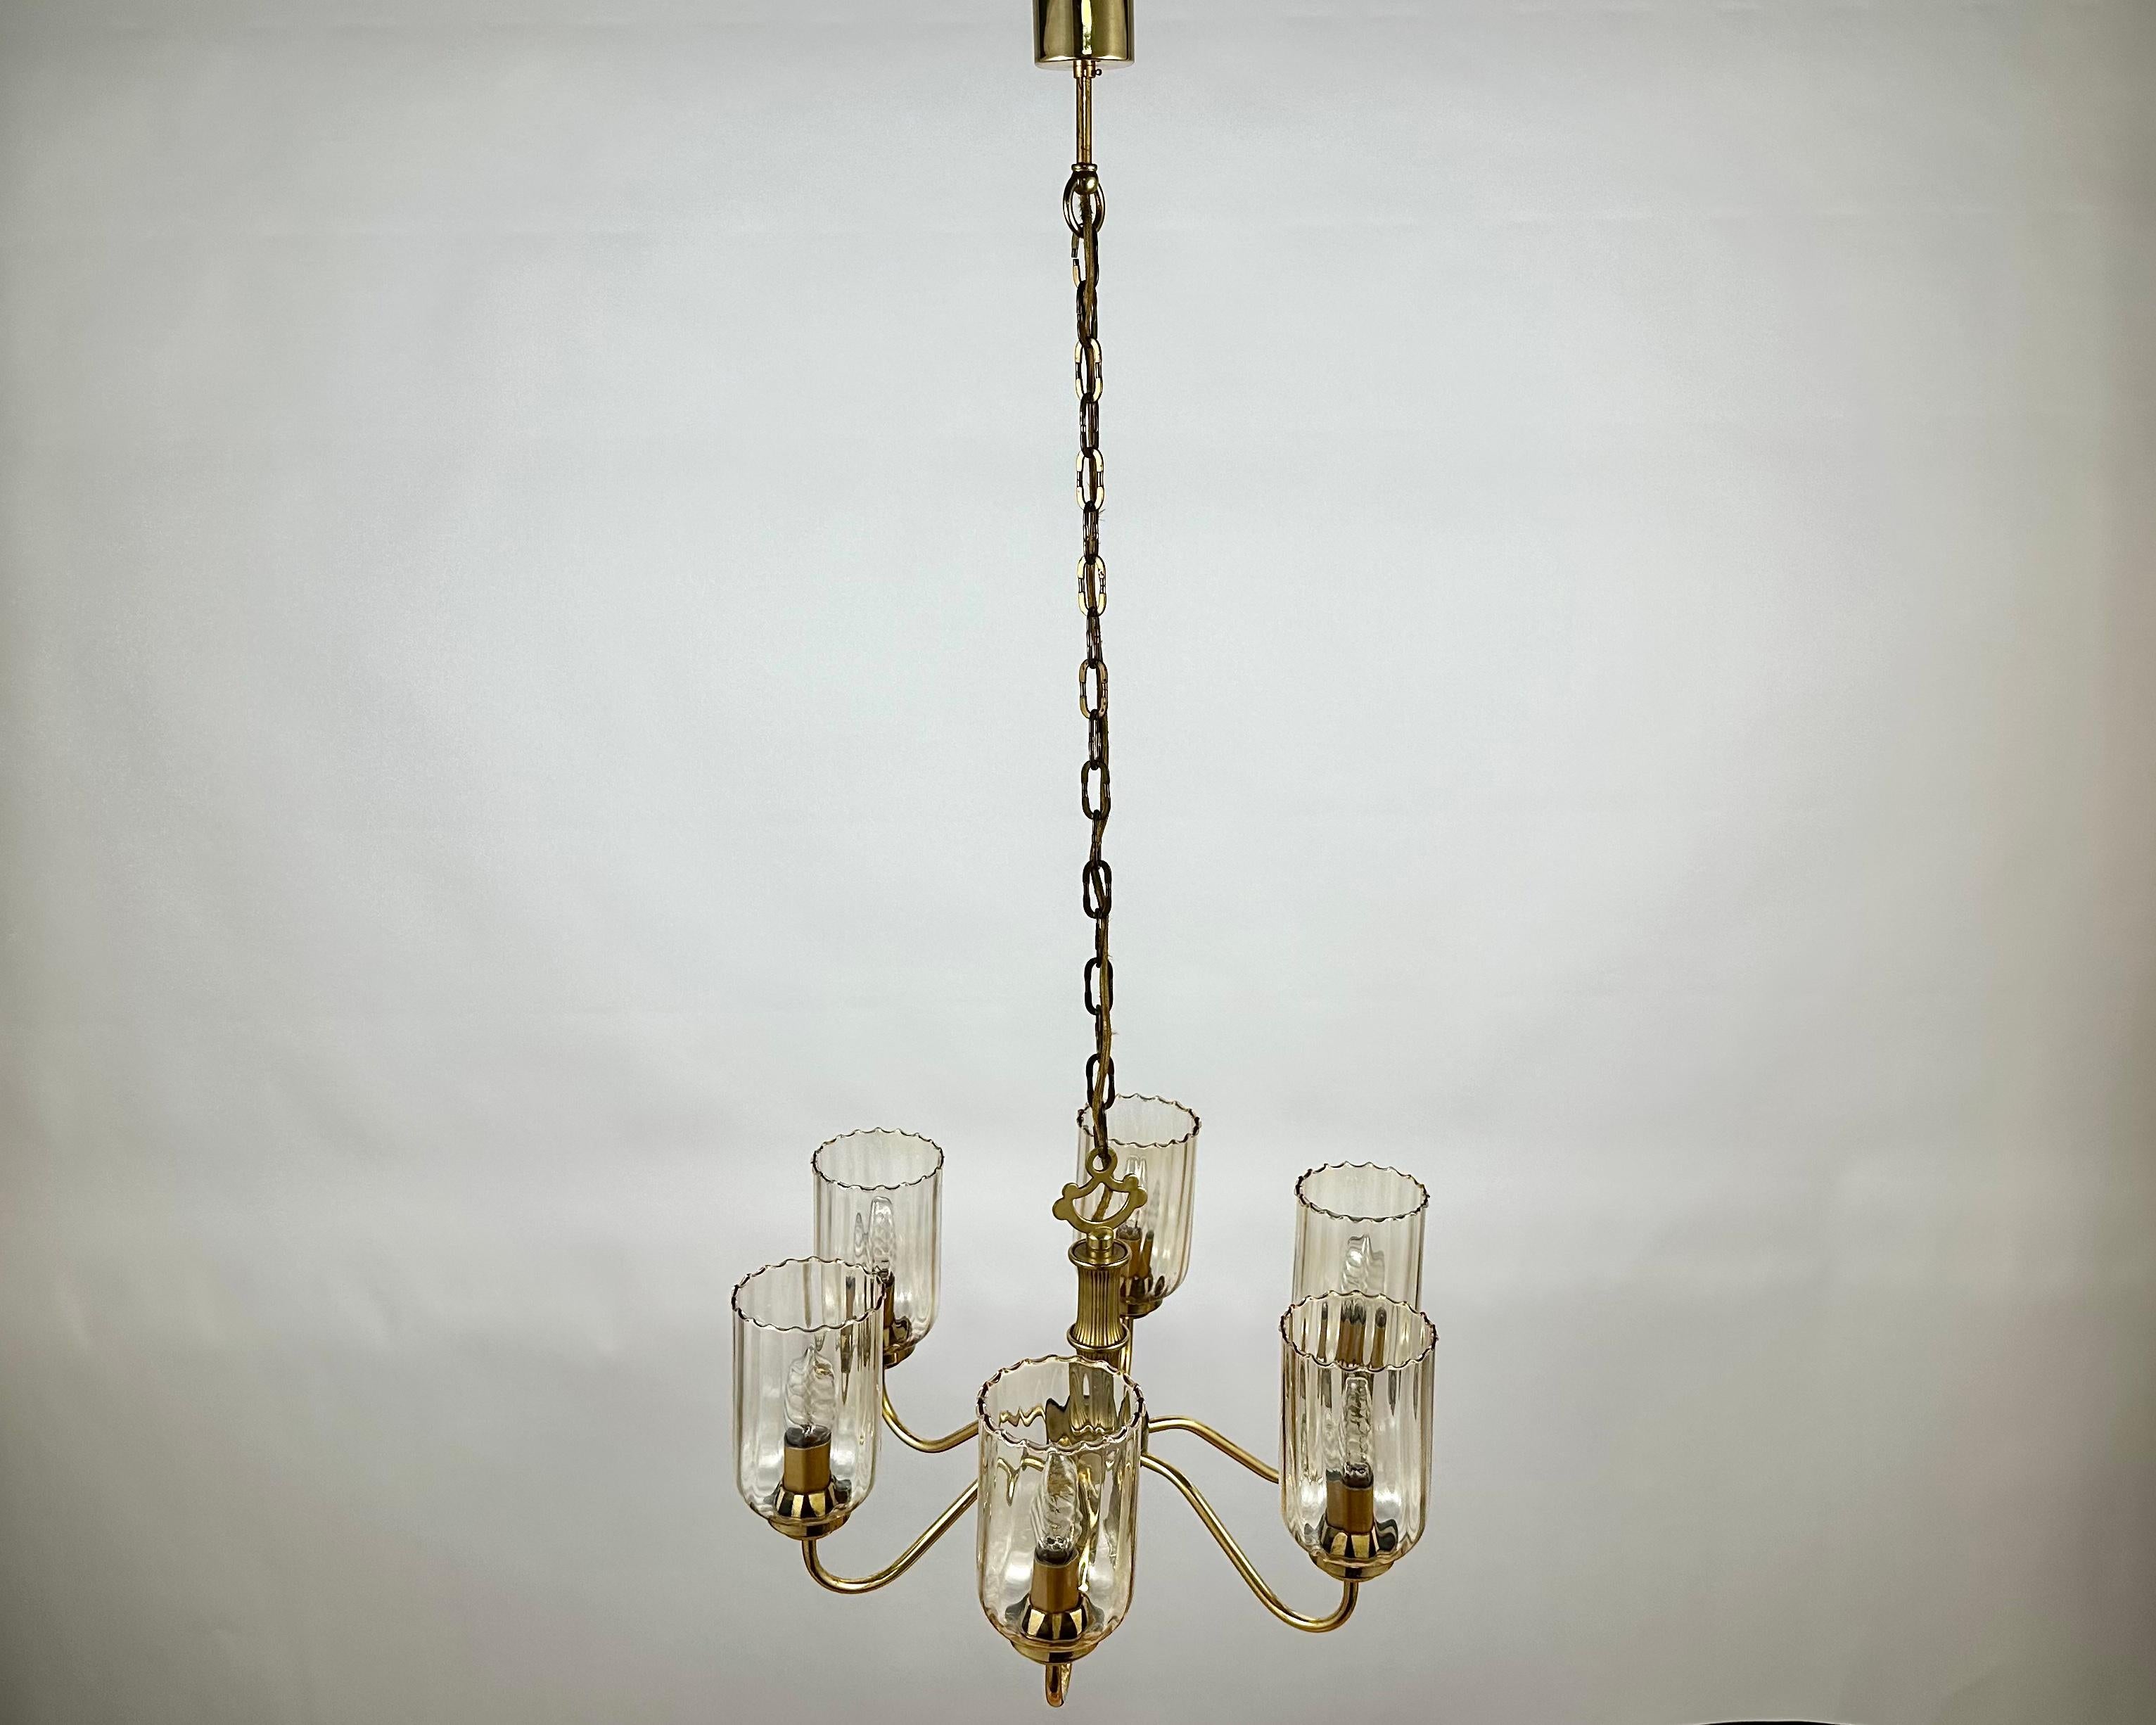 Schöne Vintage-Hängelampe, hergestellt in Deutschland, in den 1970er Jahren. 

Sechs Lampenschirme aus Glas, umrahmt von gealtertem Messing, wirken einerseits lakonisch, andererseits elegant.

Die Hauptfarbe des Modells ist Gold, das Material der